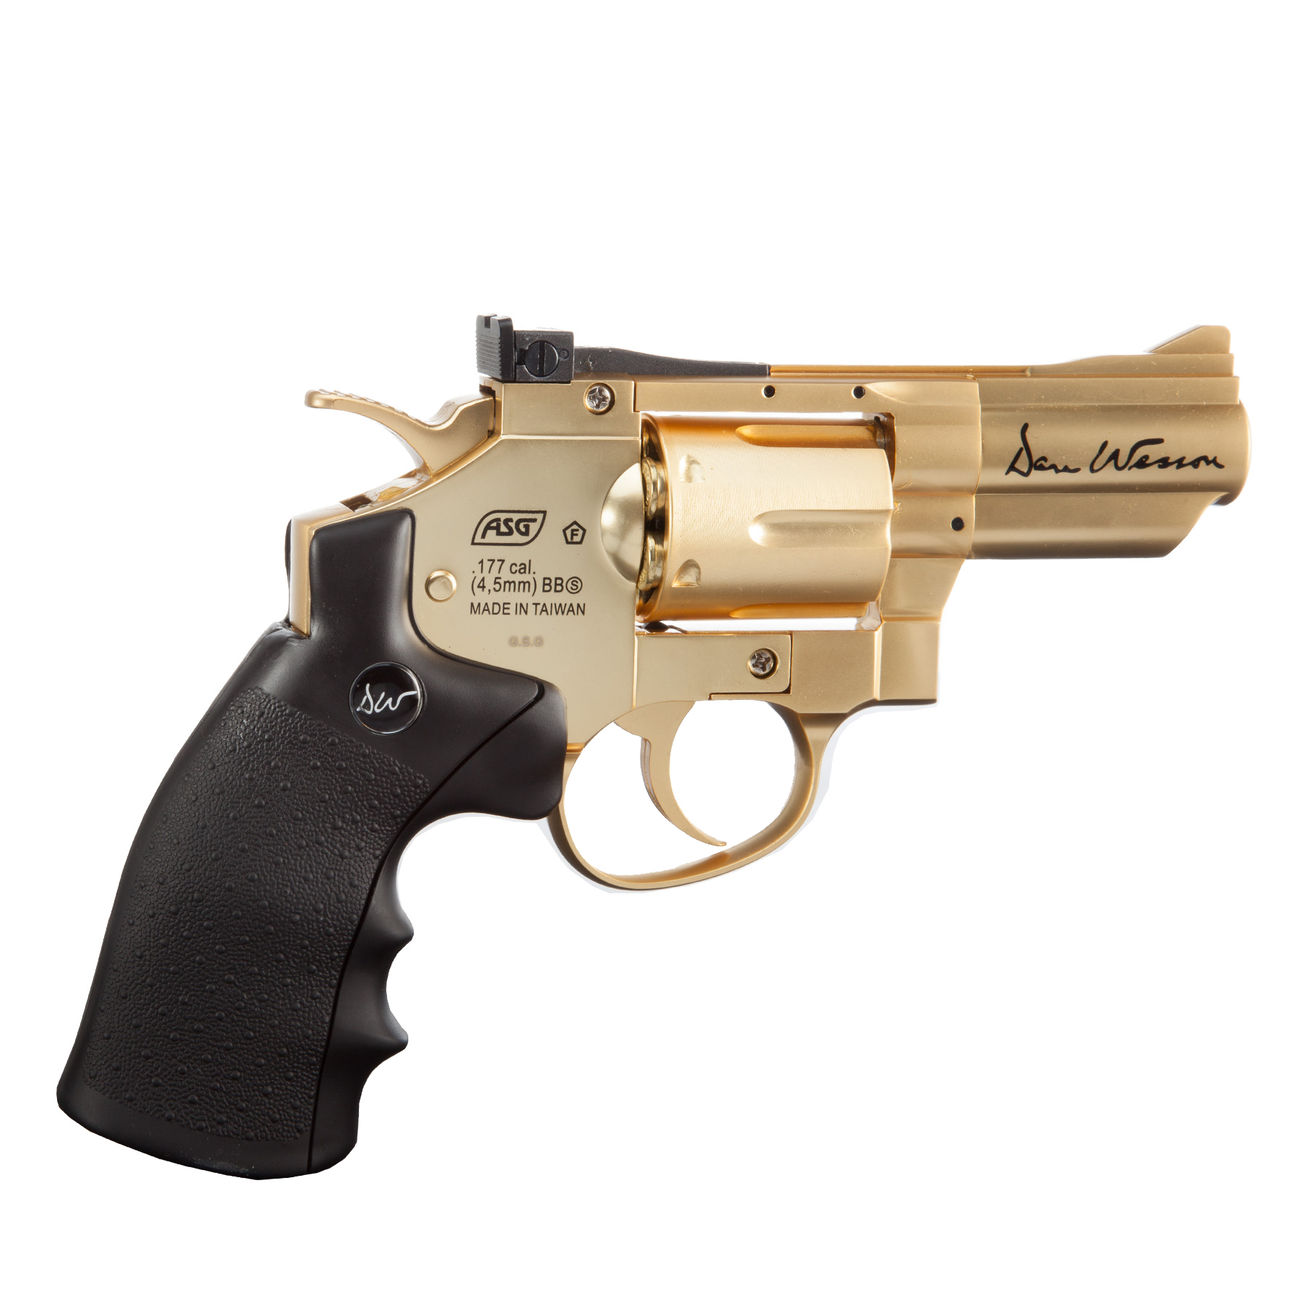 ASG Dan Wesson 2,5 Zoll 4,5mm BB CO2 Revolver gold Bild 2